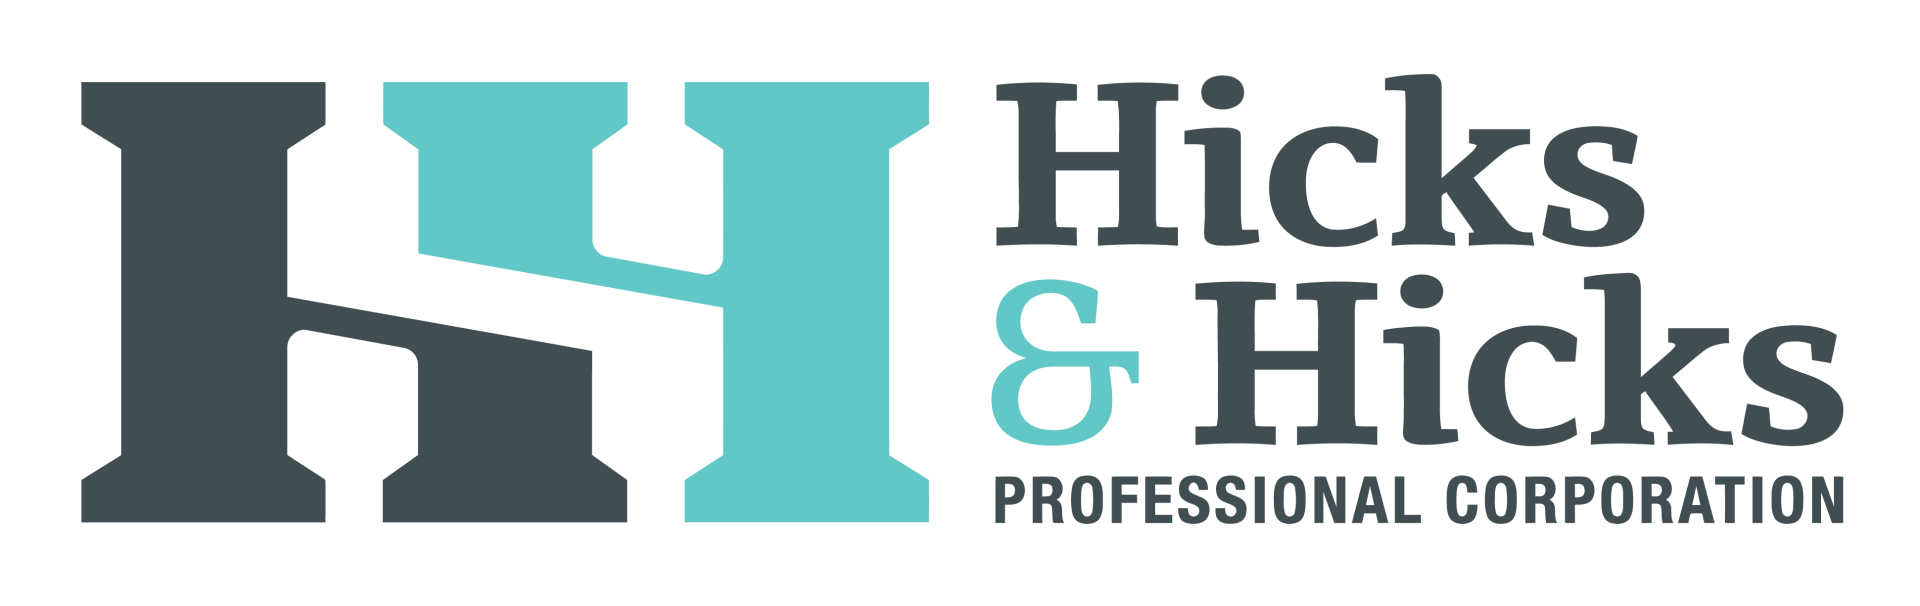 A logo for hicks & hicks professional corporation